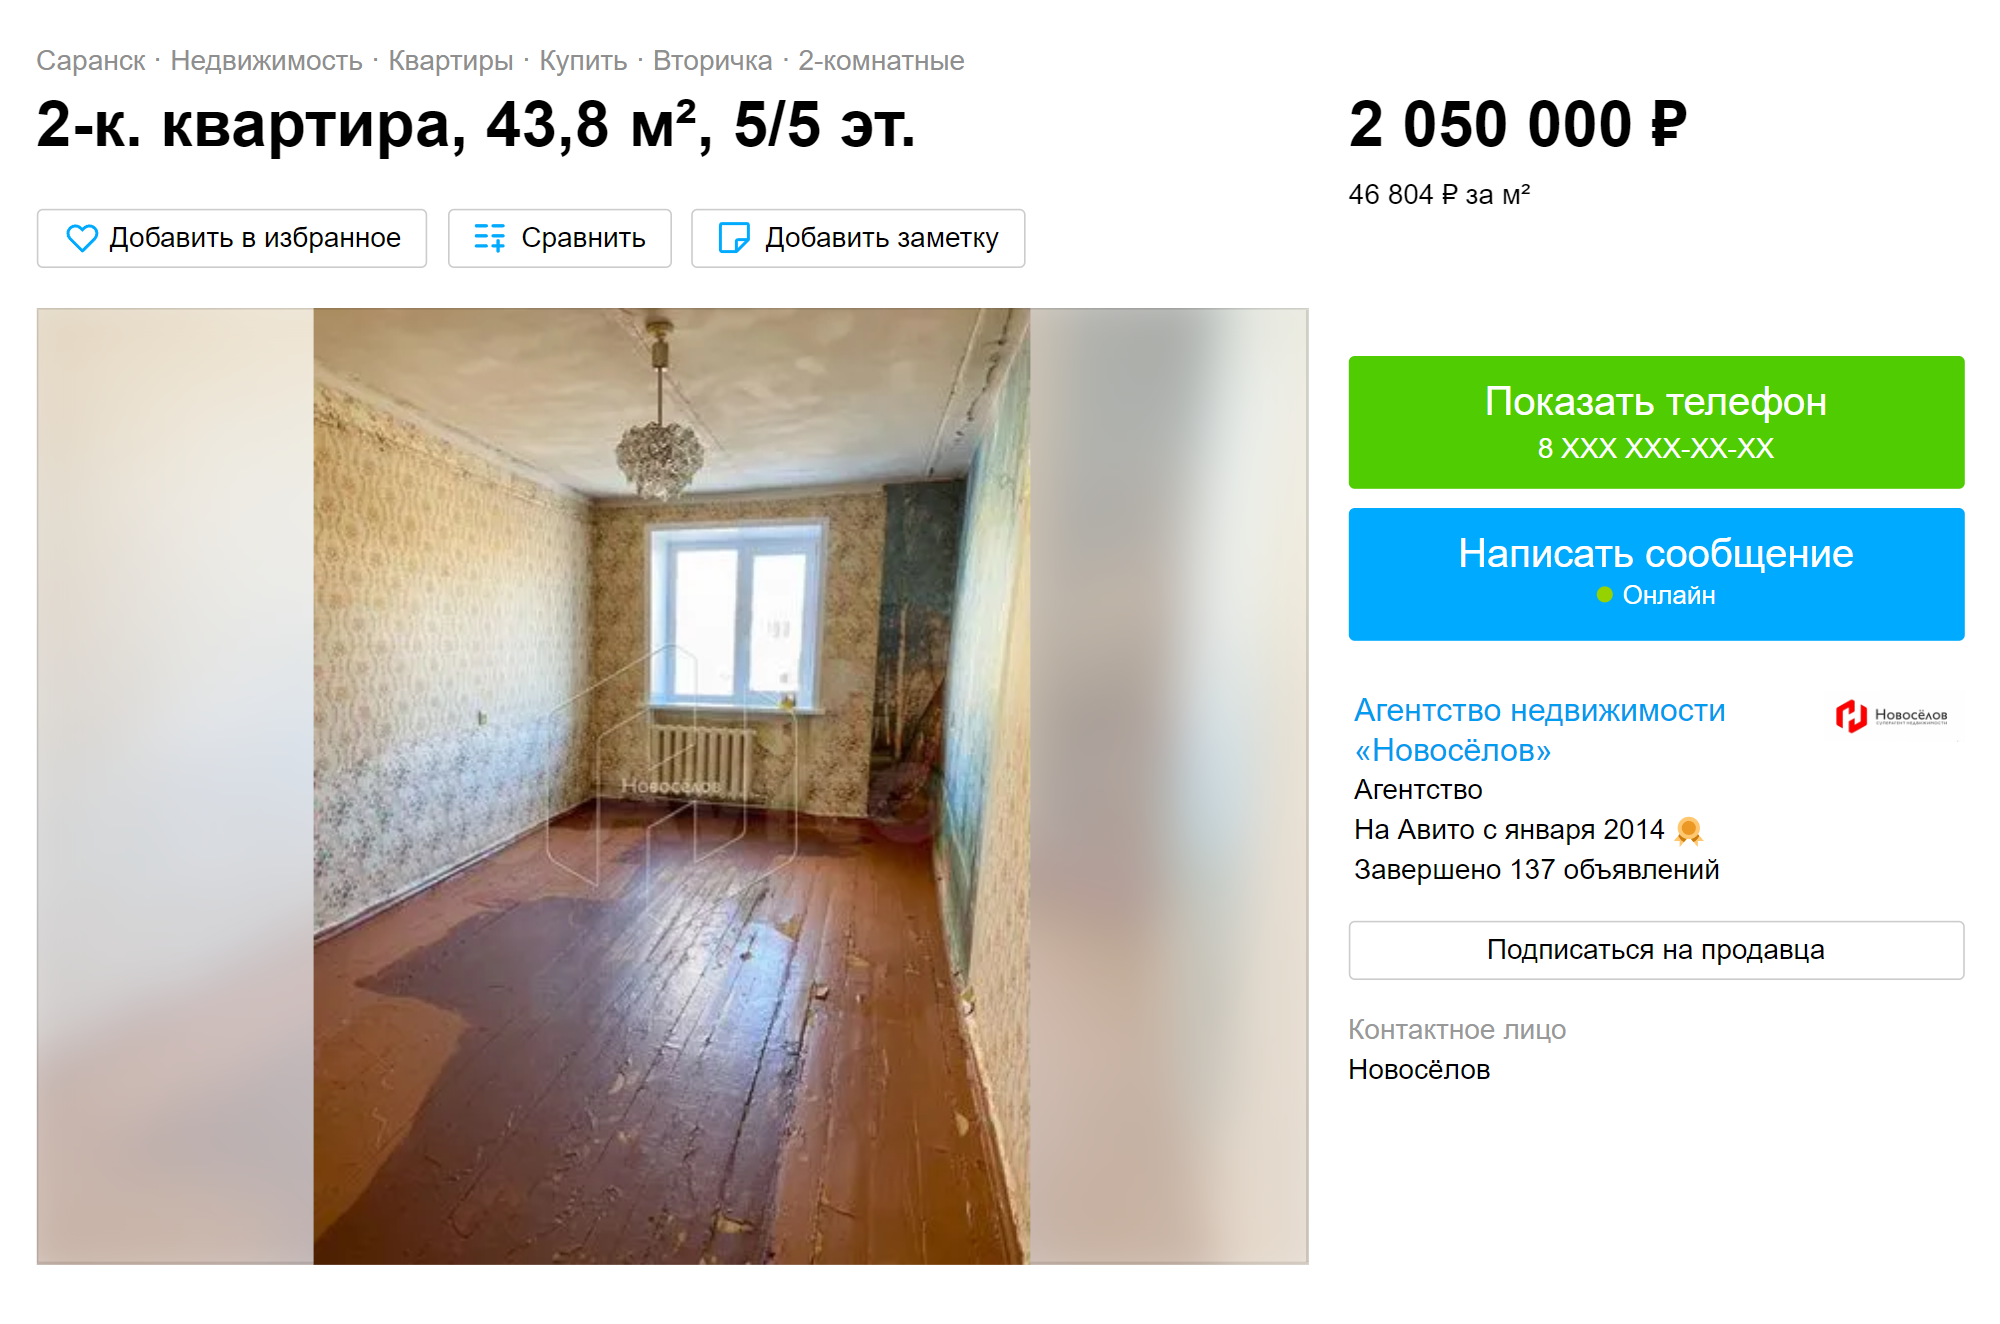 Для сравнения цен я взяла квартиры-хрущевки в кирпичных домах в одном микрорайоне. Первой квартире требуется ремонт. Она далеко не в самом плачевном состоянии, но жить без ремонта новым владельцам в ней было бы неудобно. Цена — 46 804 ₽ за м², но даже по такой низкой цене ее не покупают уже полгода. Источник: avito.ru